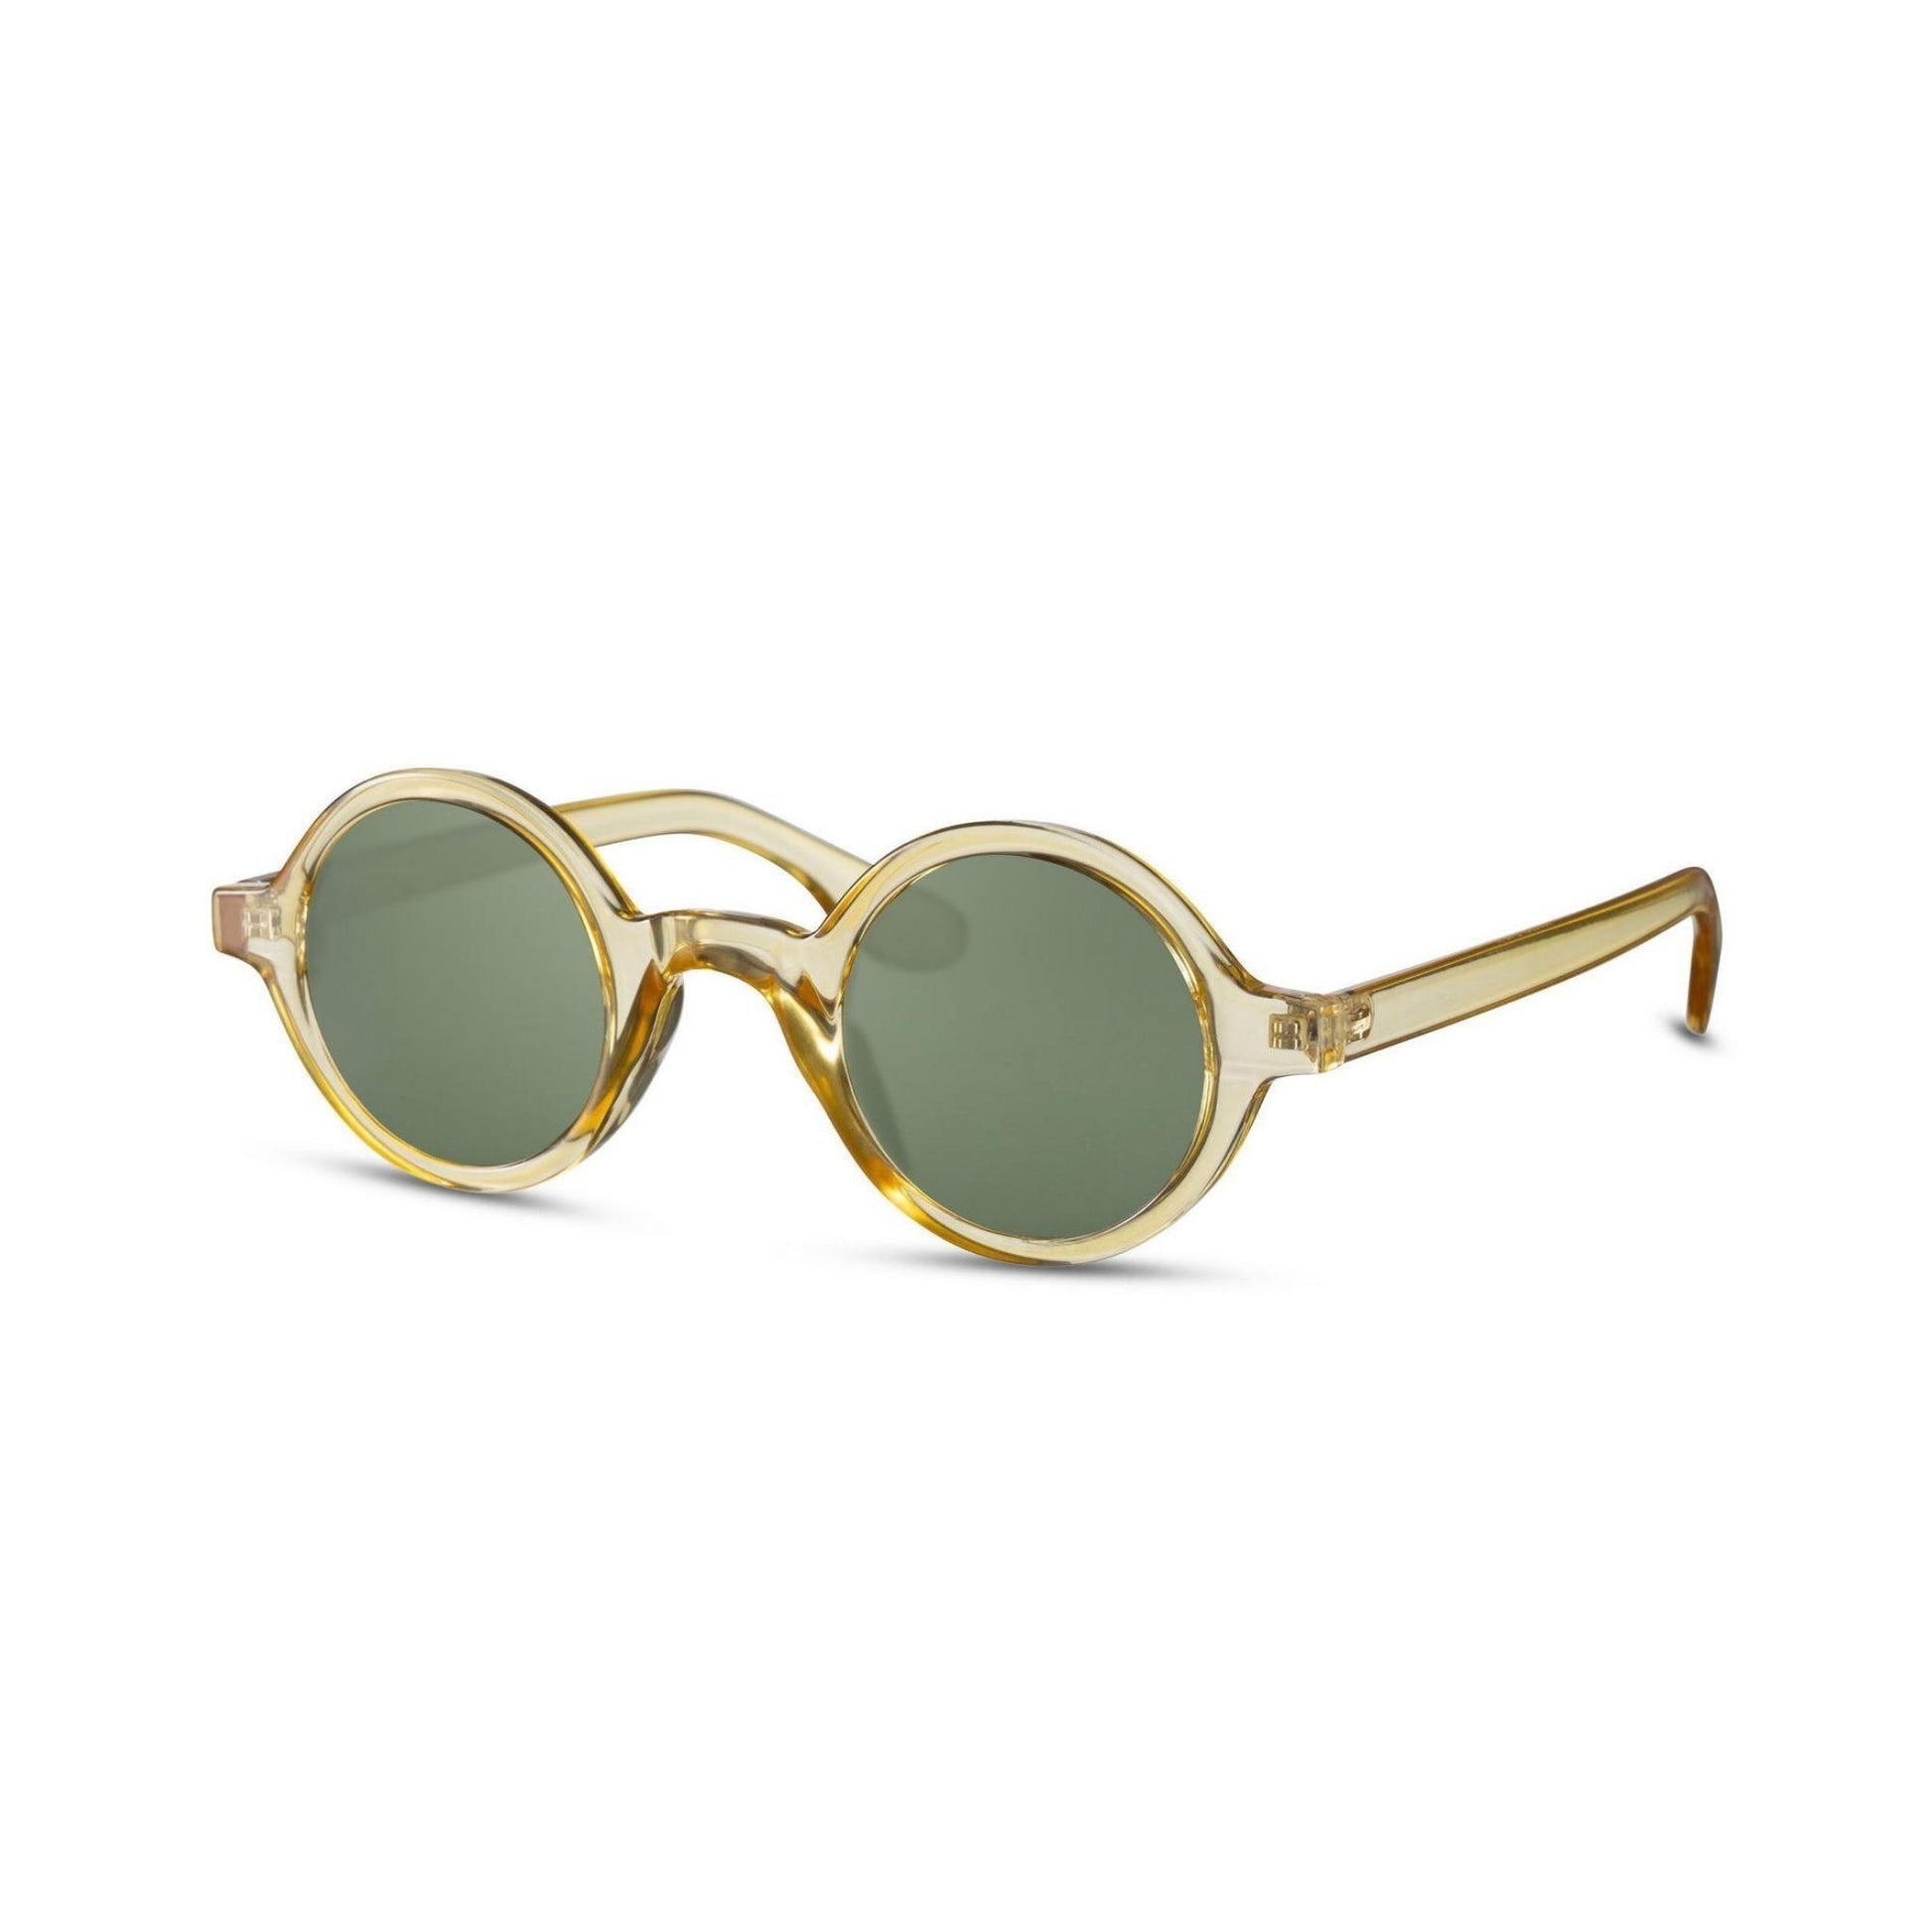 Στρογγυλά Γυαλιά Ηλίου Aurora της Exposure Sunglasses με προστασία UV400 σε κίτρινο χρώμα σκελετού και πράσινο φακό.